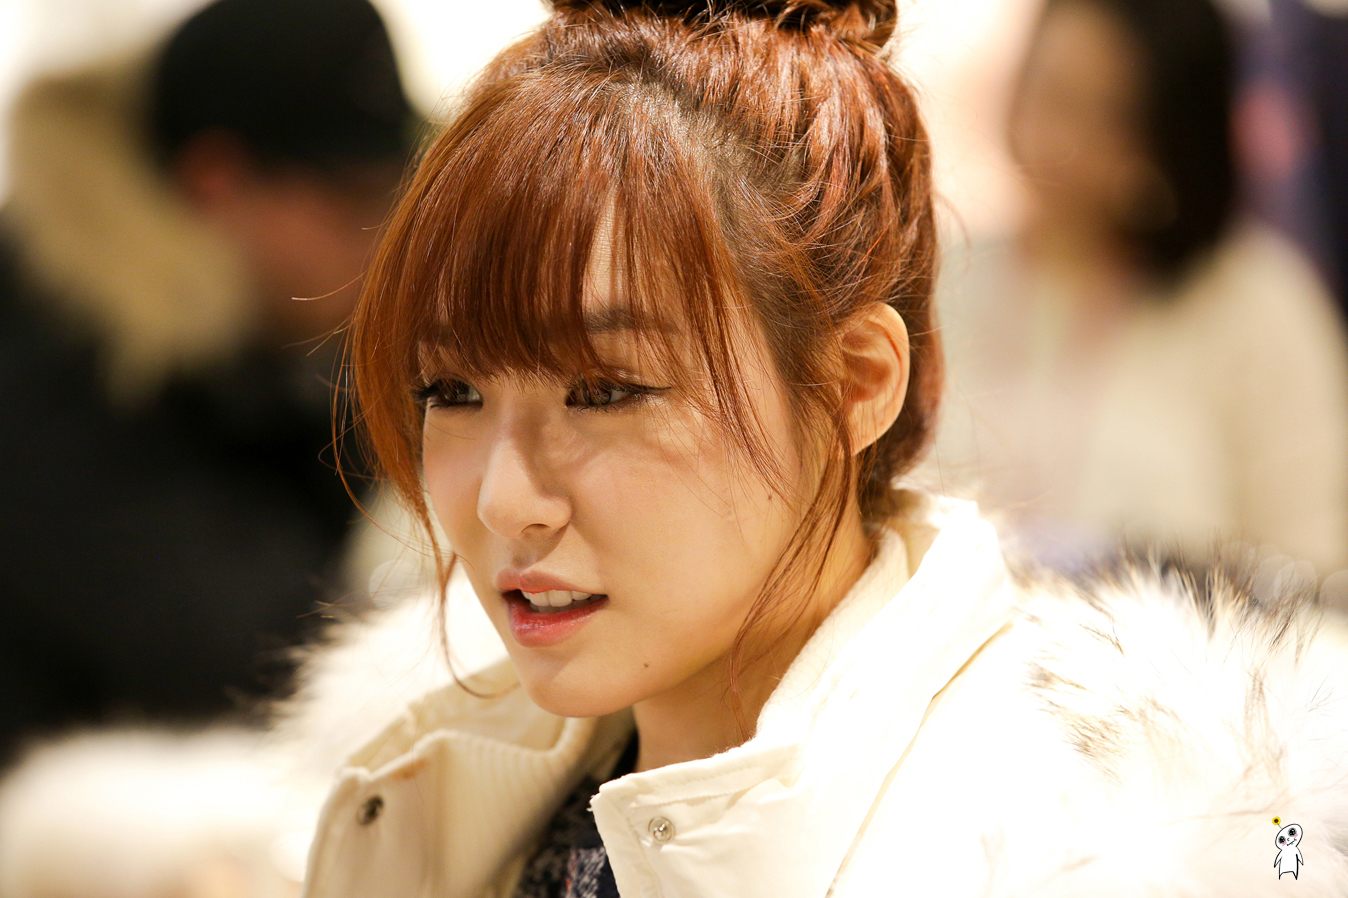 [PIC][28-11-2013]Tiffany ghé thăm cửa hàng "QUA" ở Hyundai Department Store vào trưa nay - Page 2 2616684252980C8B11E815